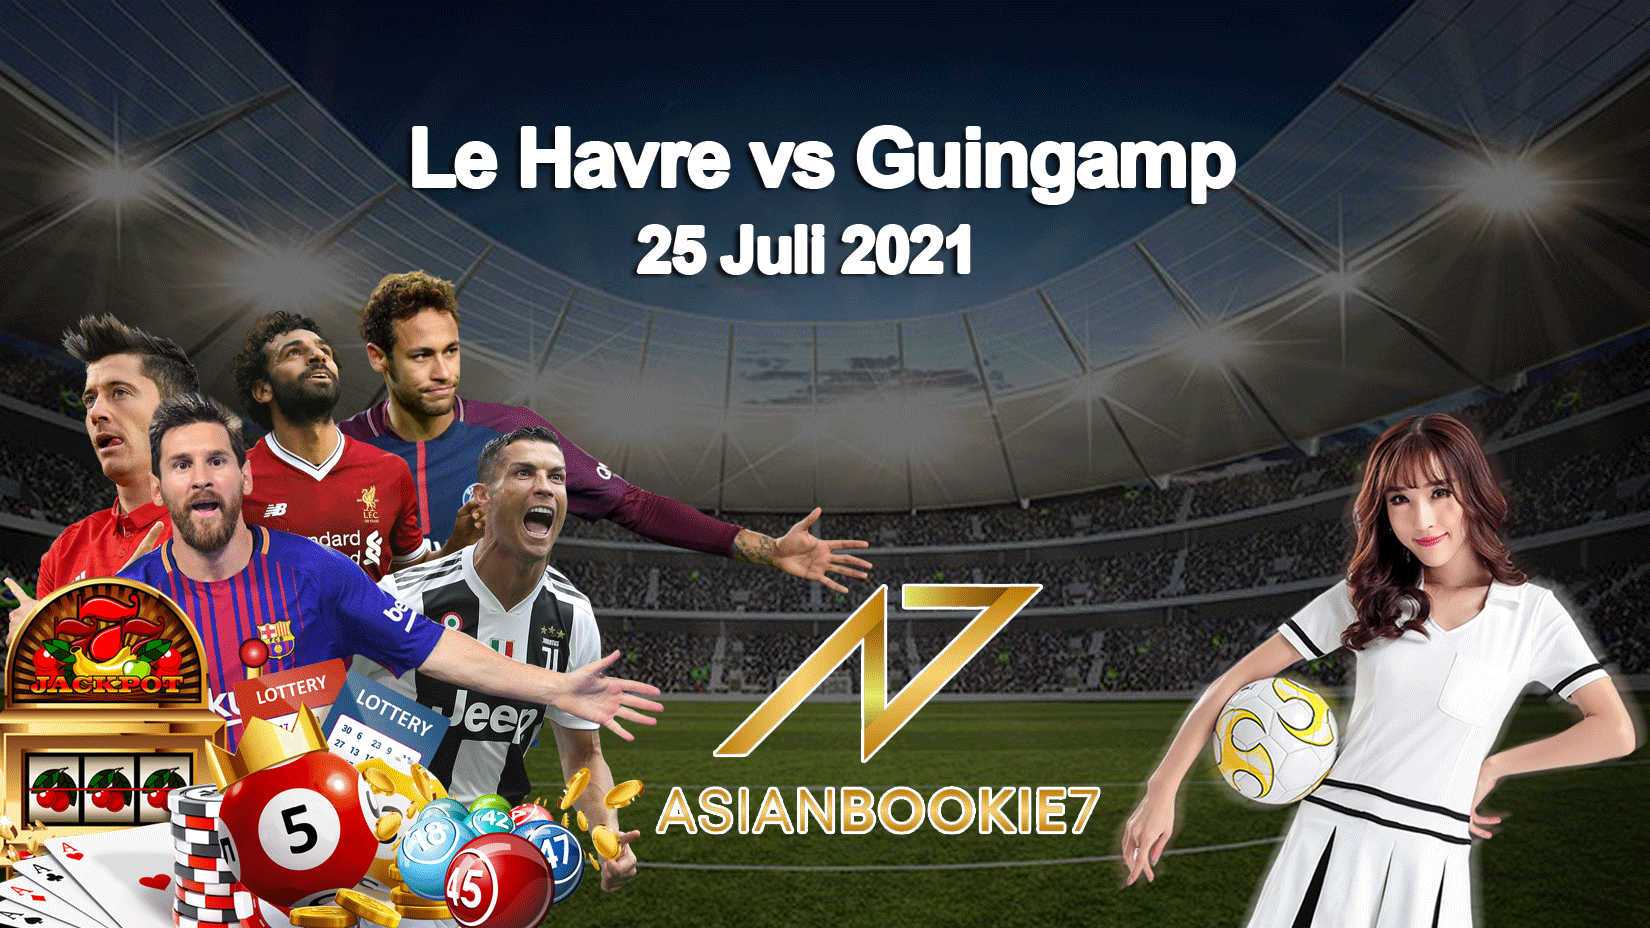 Prediksi Le Havre vs Guingamp 25 Juli 2021